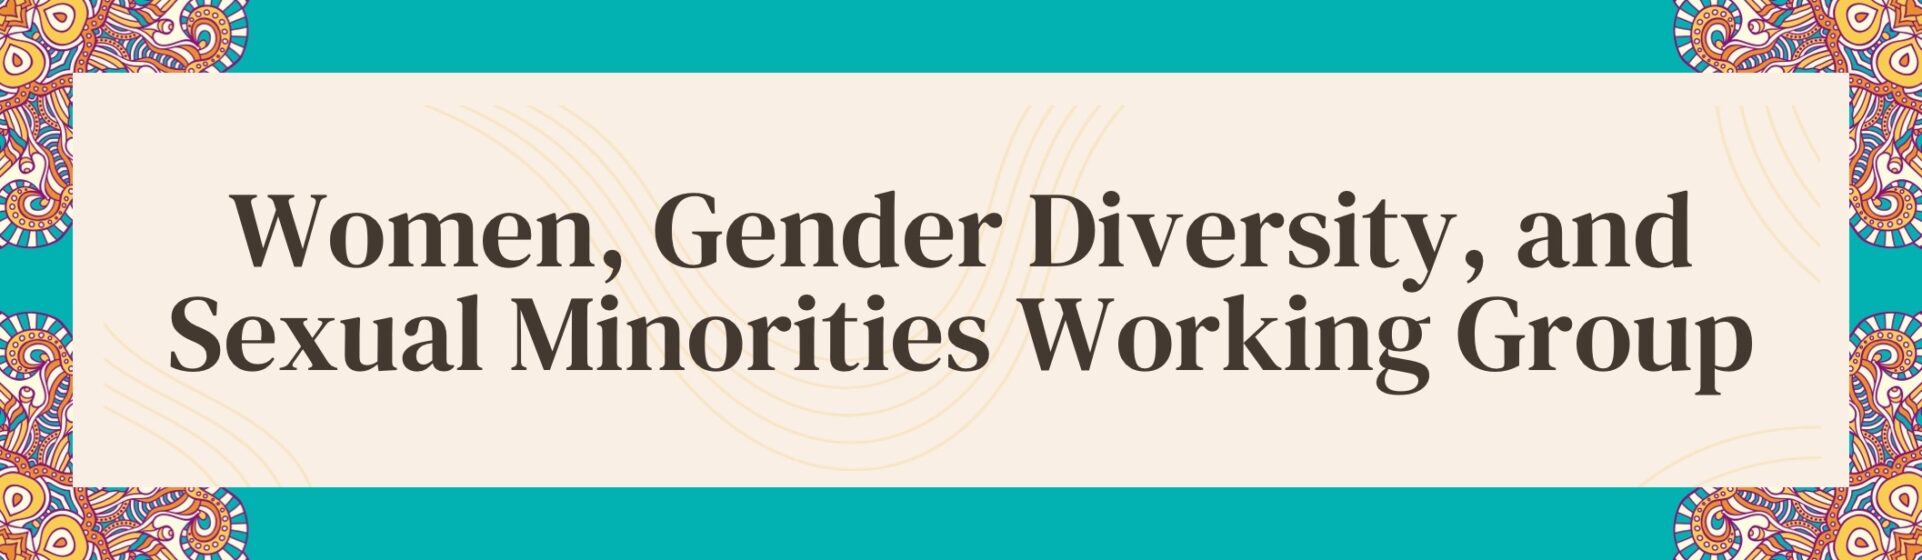 Women, Gender Diversity, and Sexual Minorities Working Group